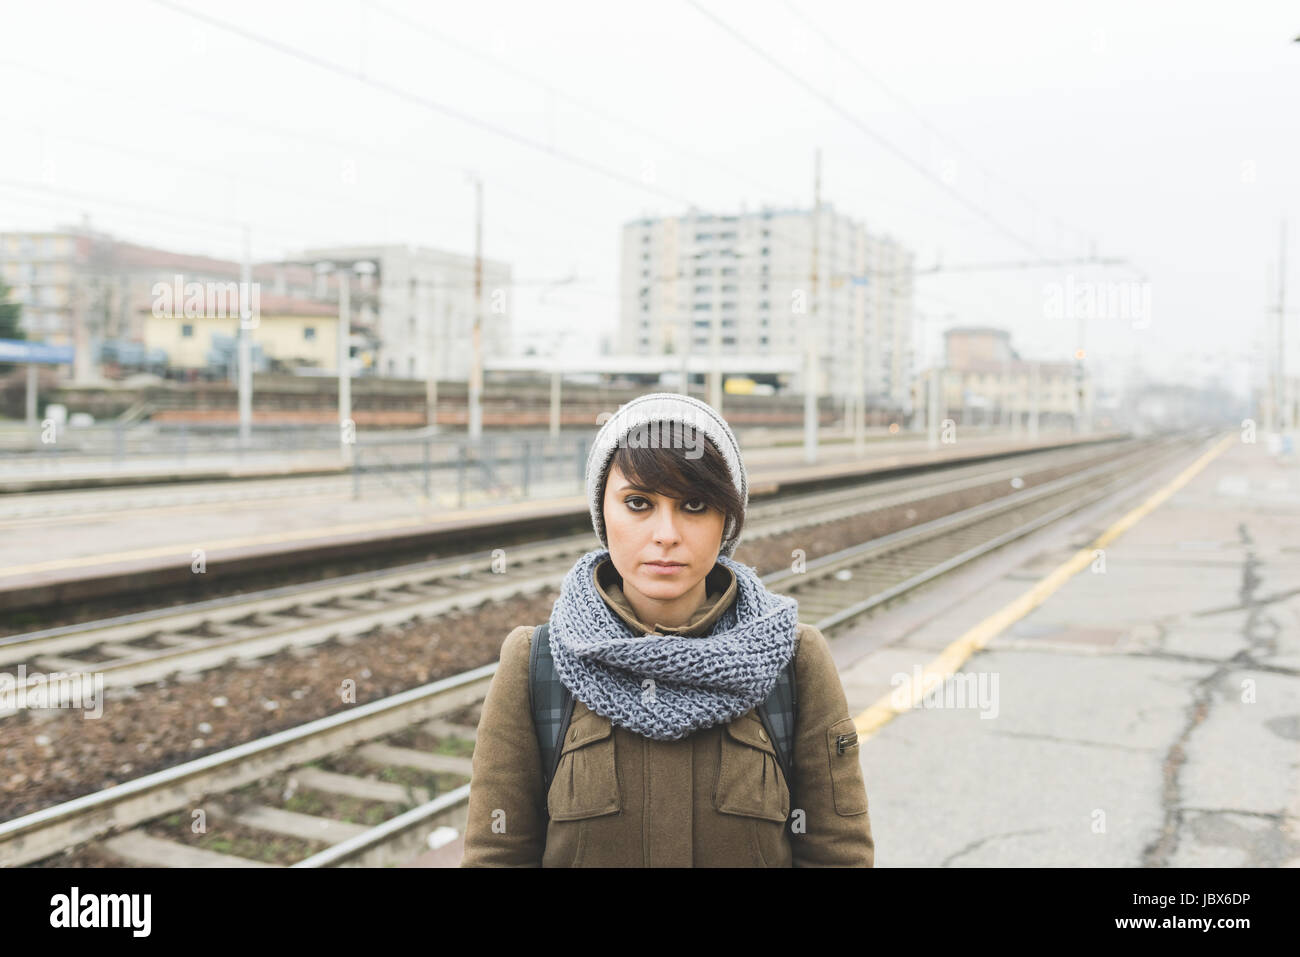 Ritratto di donna in knit hat sulla piattaforma ferroviaria Foto Stock